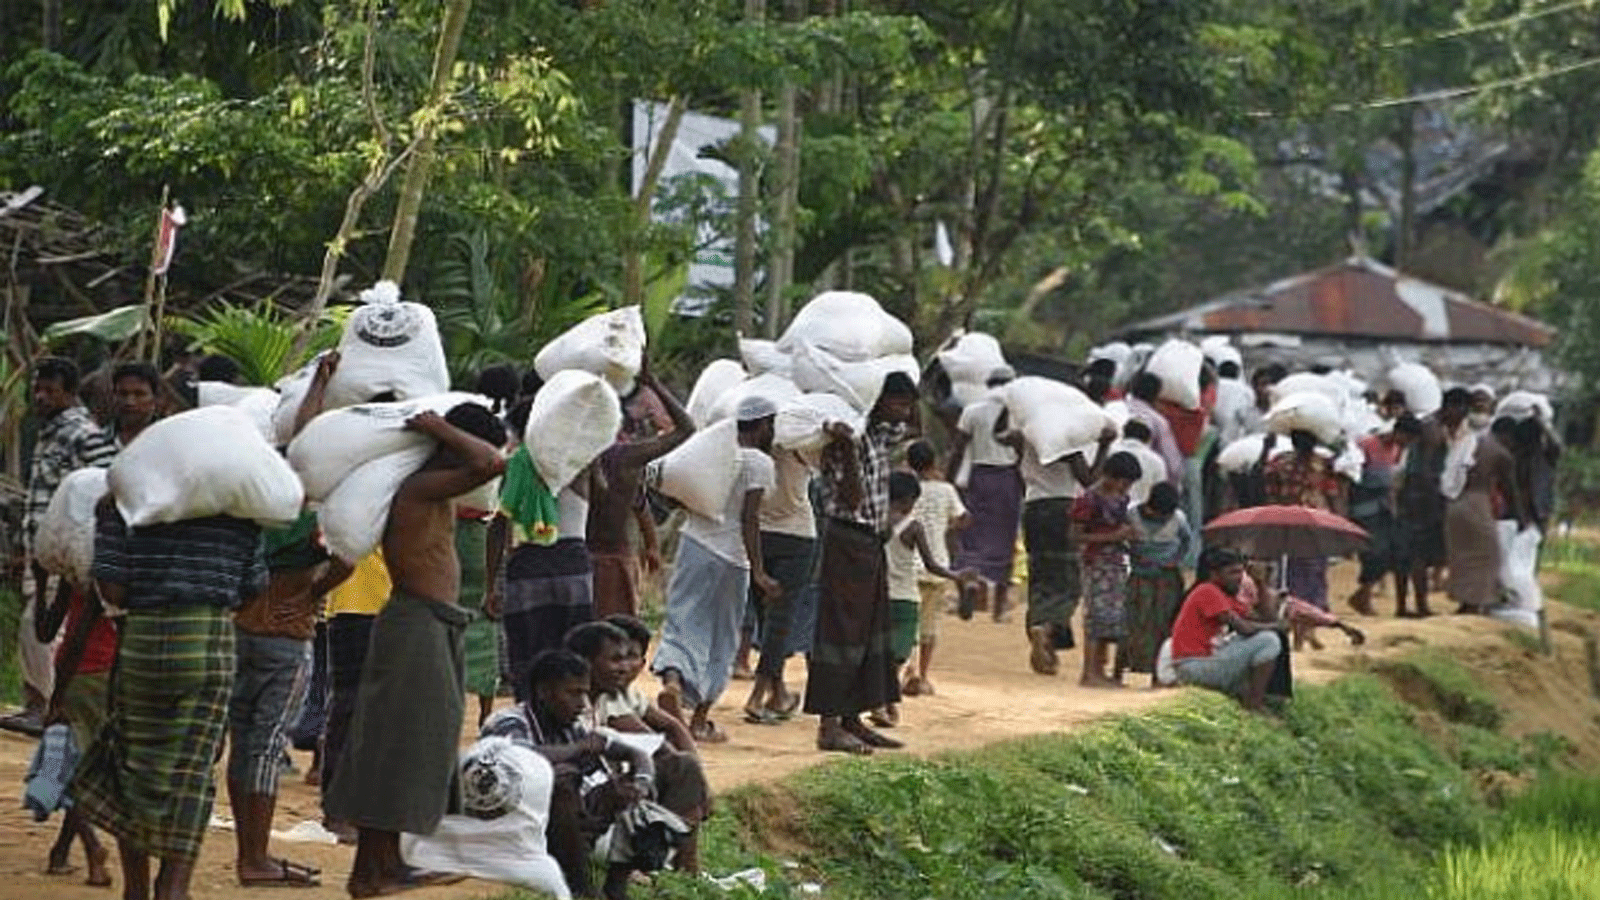 اللاجئون المسلمون من الروهينغا يحملون الطعام الموزع في مركز بالوخالي بالقرب من جومدهوم في بنغلاديش في 26 أيلول\سبتمبر 2017